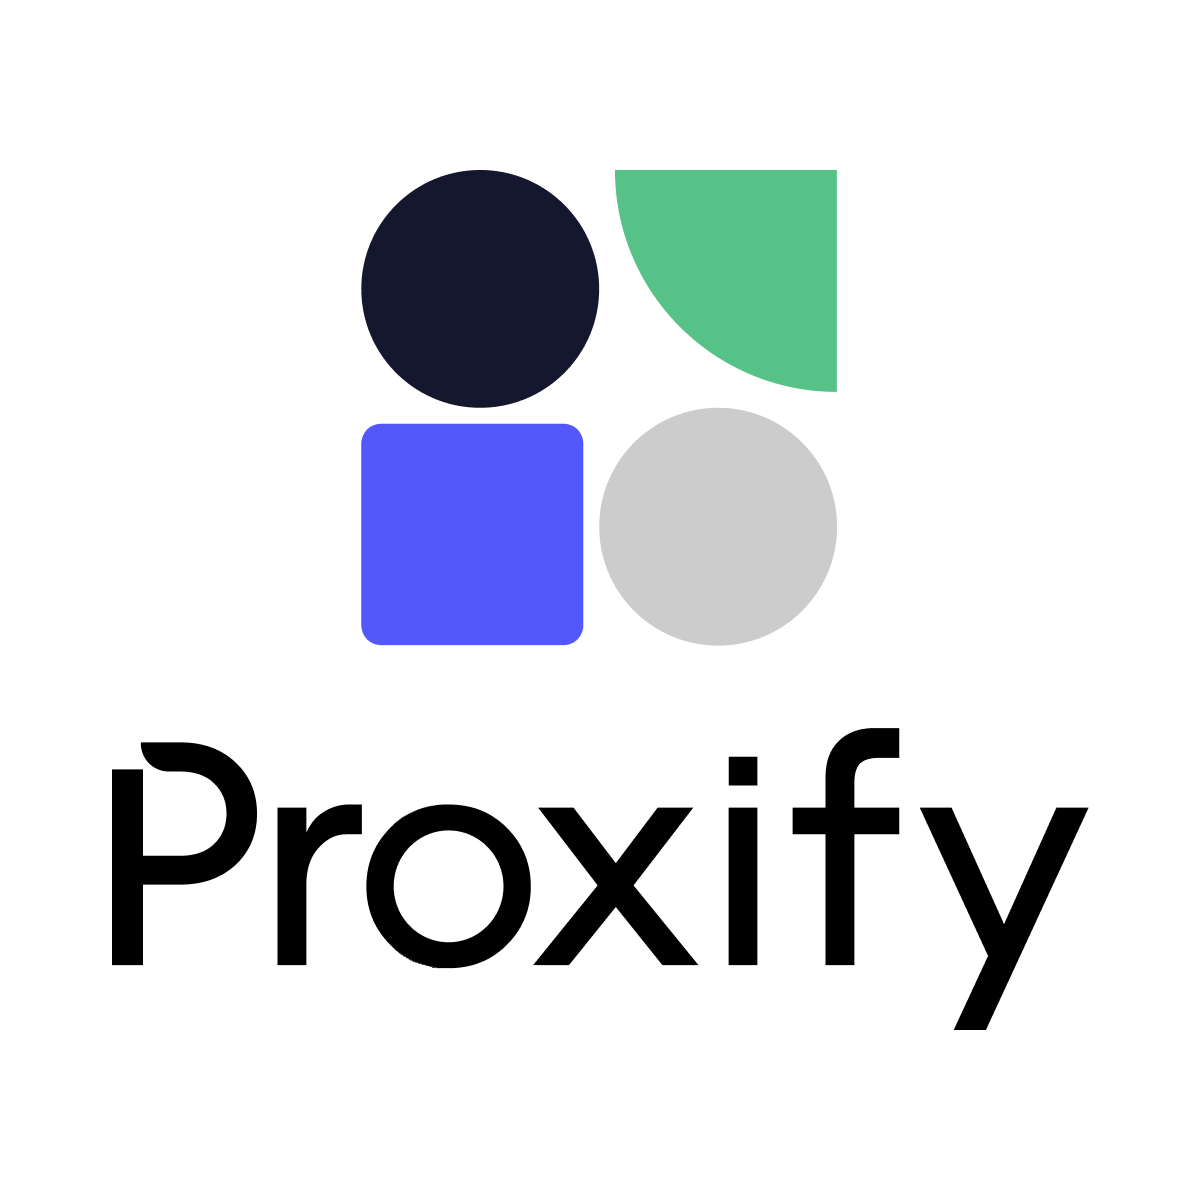 Senior Vue.js Developer: Long-Term Job - 100% Remote at Proxify